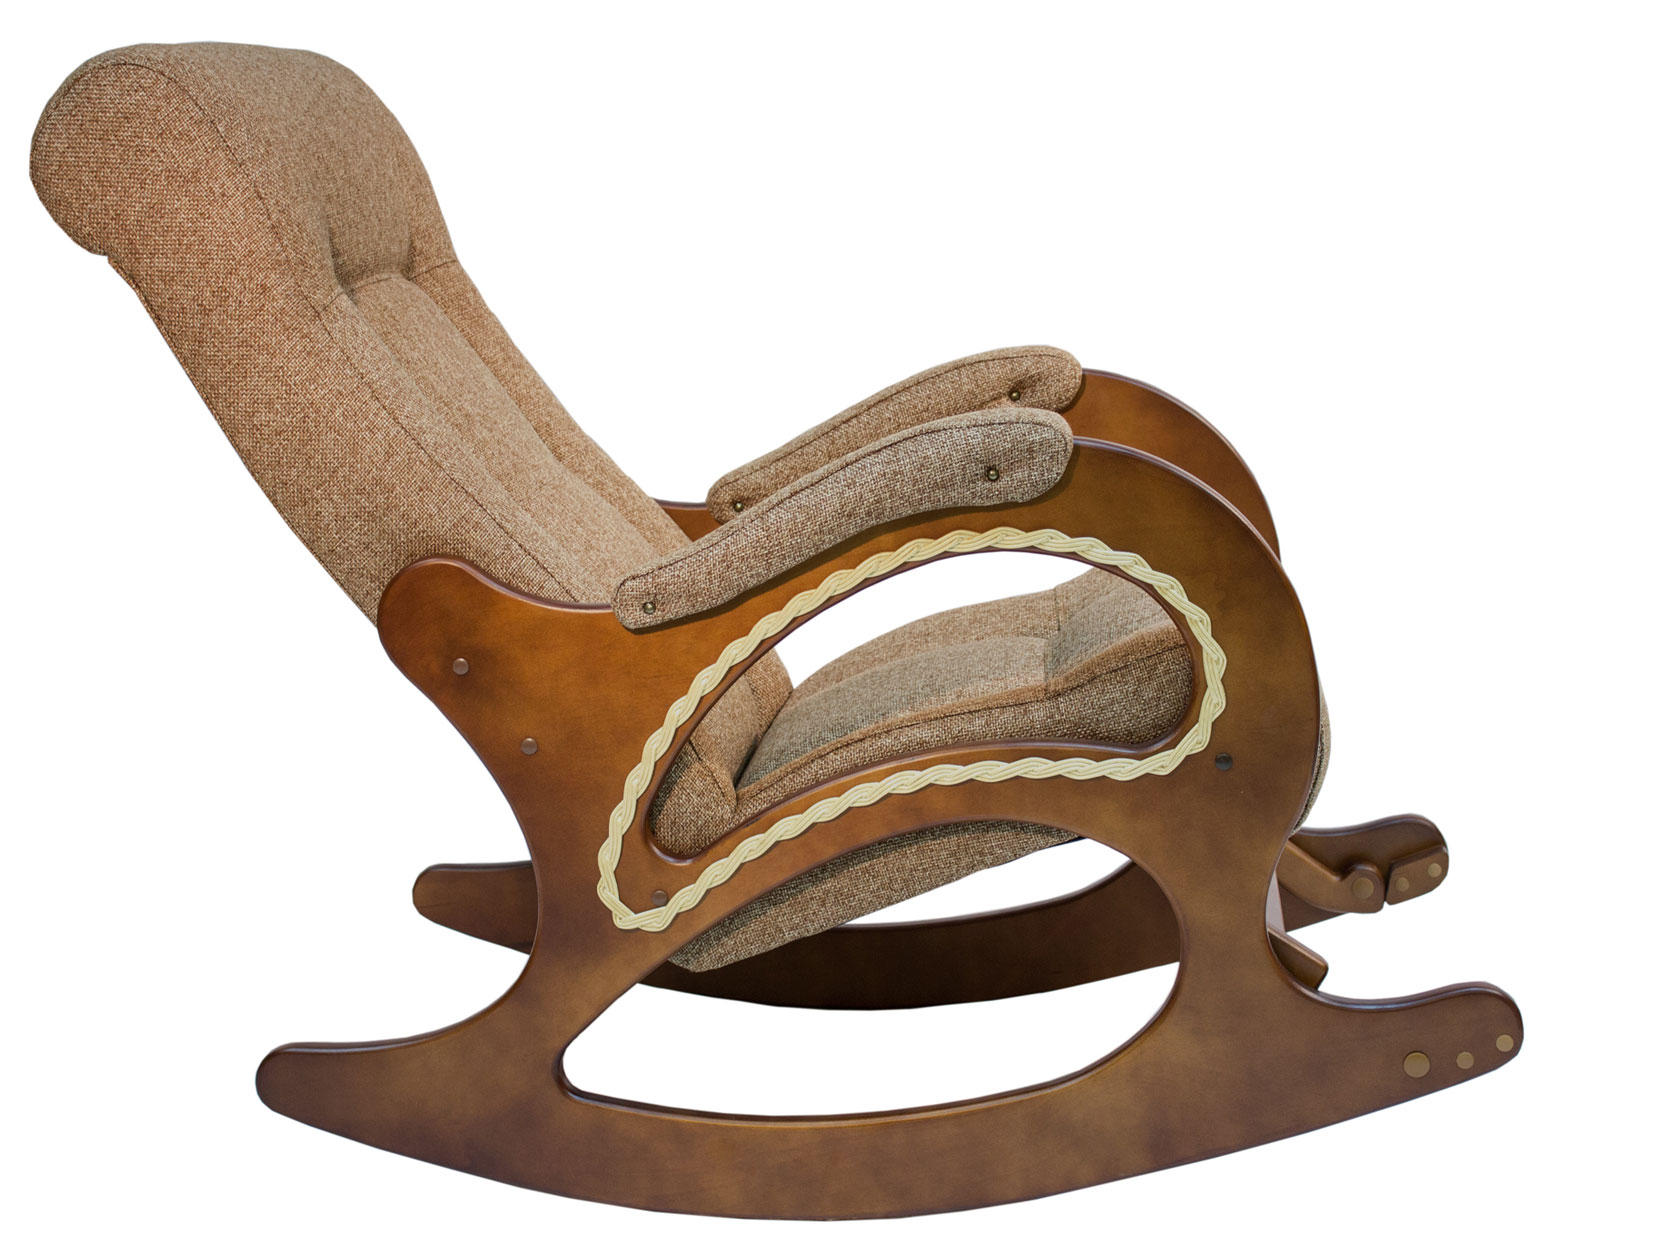 кресло качалка комфорт модель 3